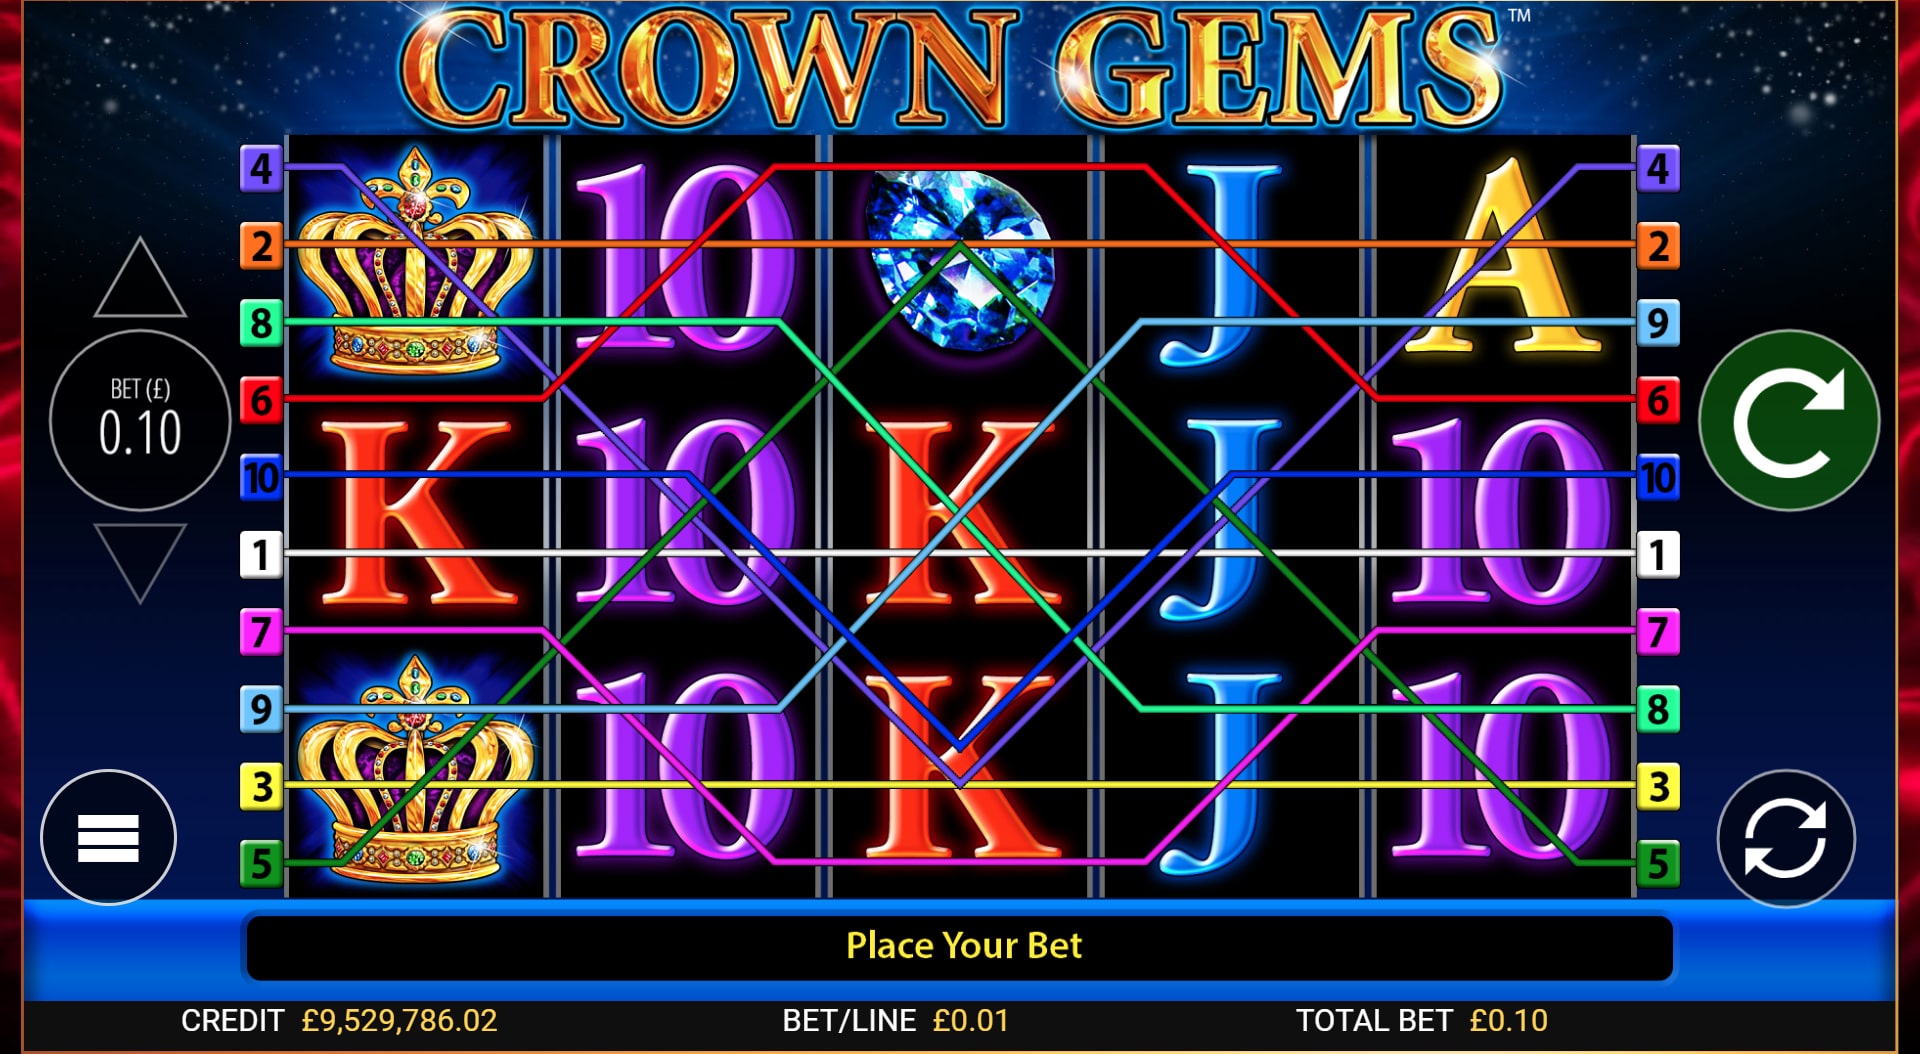 Crown Gems Free Spins